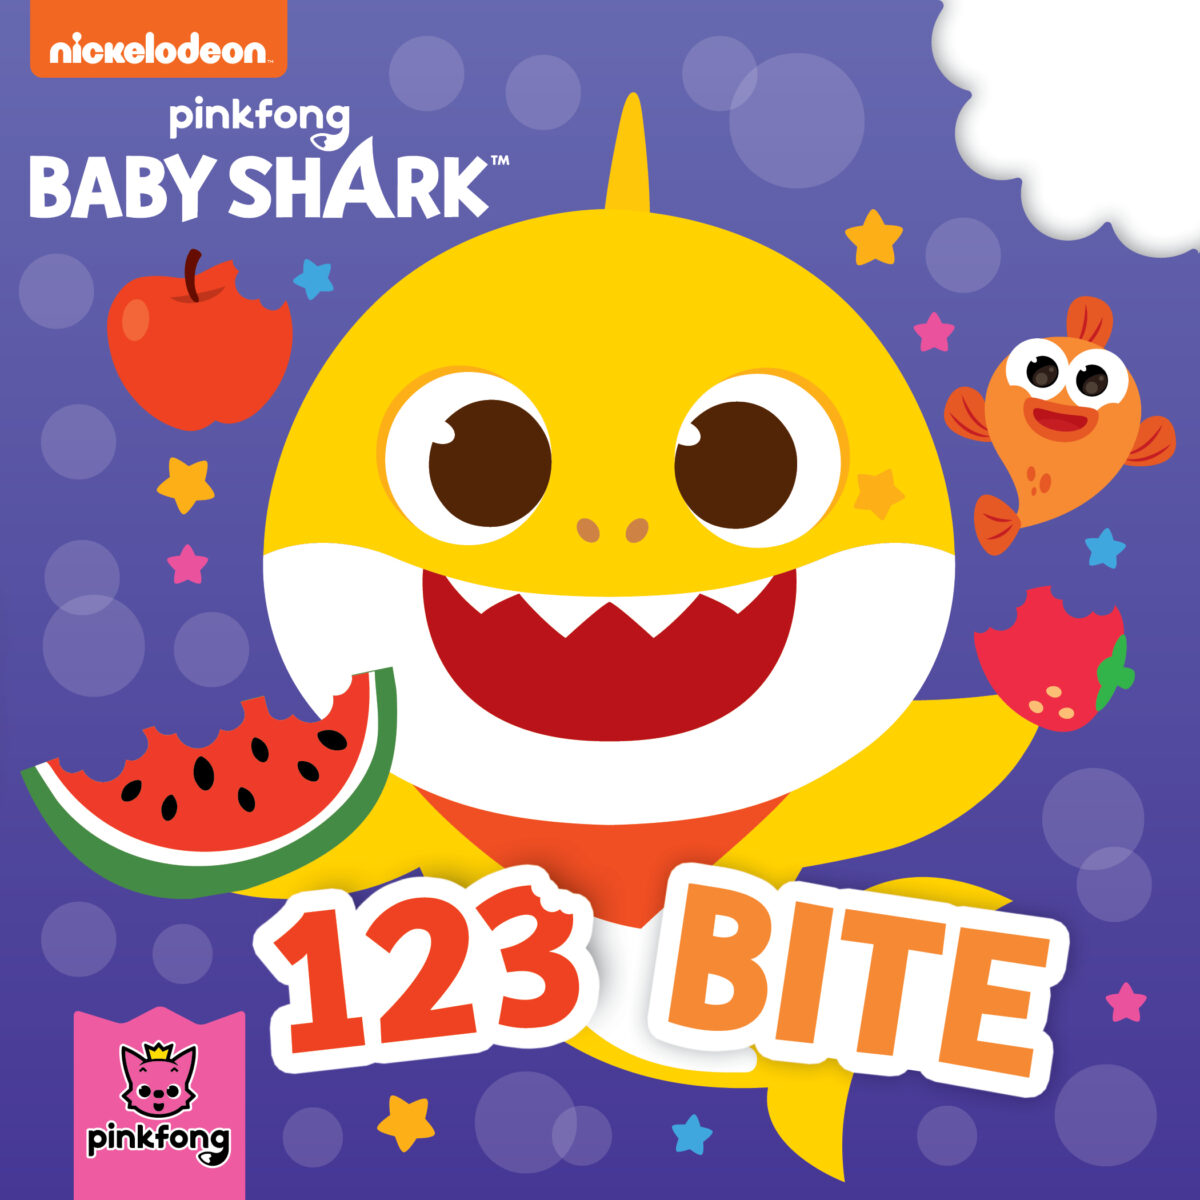 Baby Shark: 123 Bite